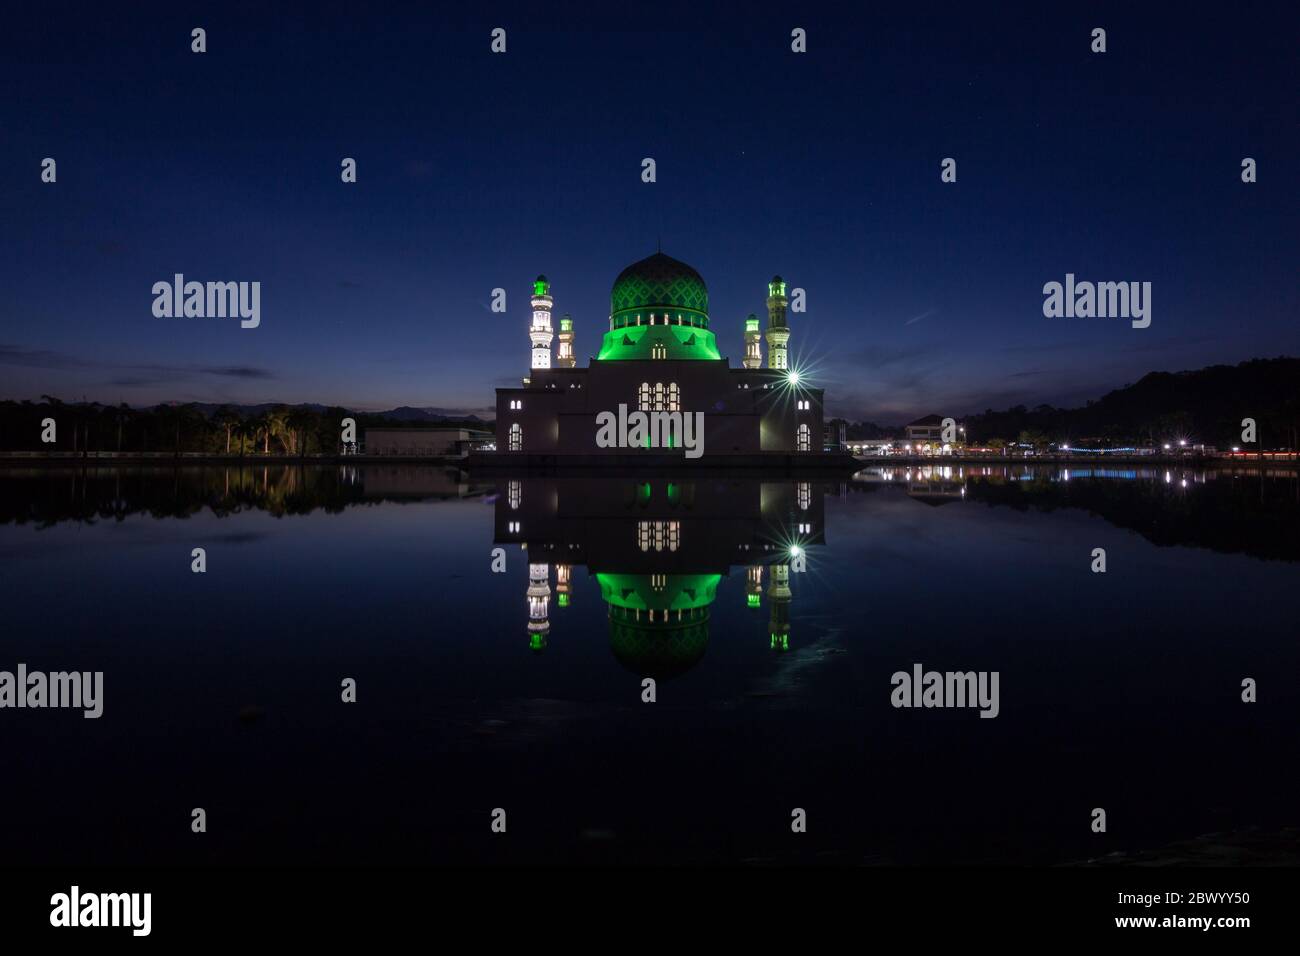 Beautiful sunrise blue hour and reflection of Floating Mosque Of Kota Kinabalu, Sabah. Stock Photo